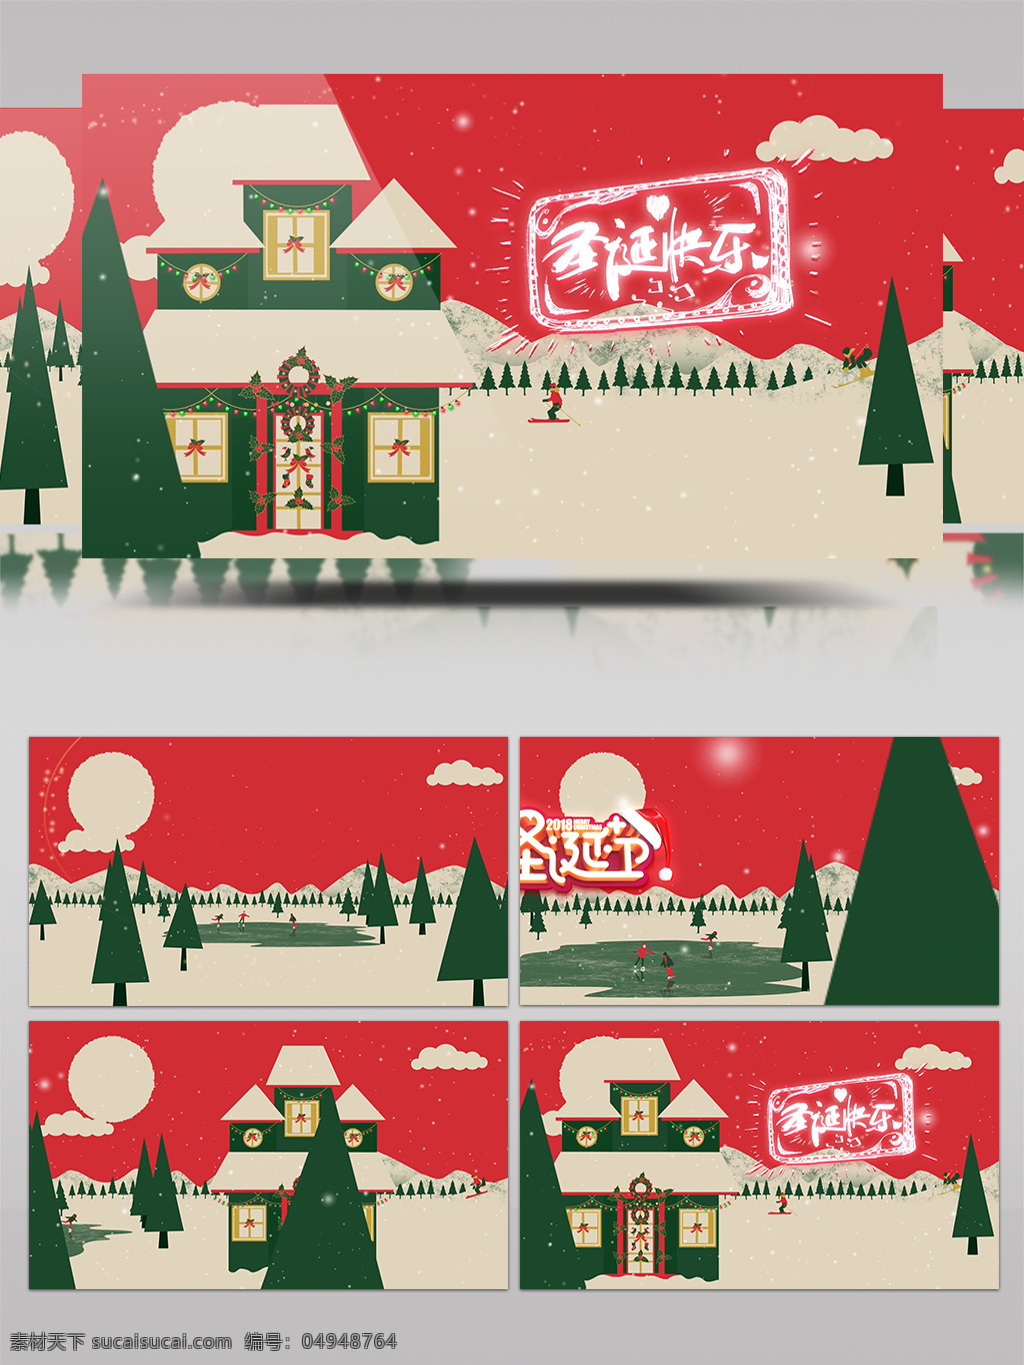 唯美 圣诞节 开场 动画 mg 卡通动画 相册 包装 雪景 雪花 片头 片尾 周年 日 纪念 展示 冰雪 麋鹿 圣诞老人